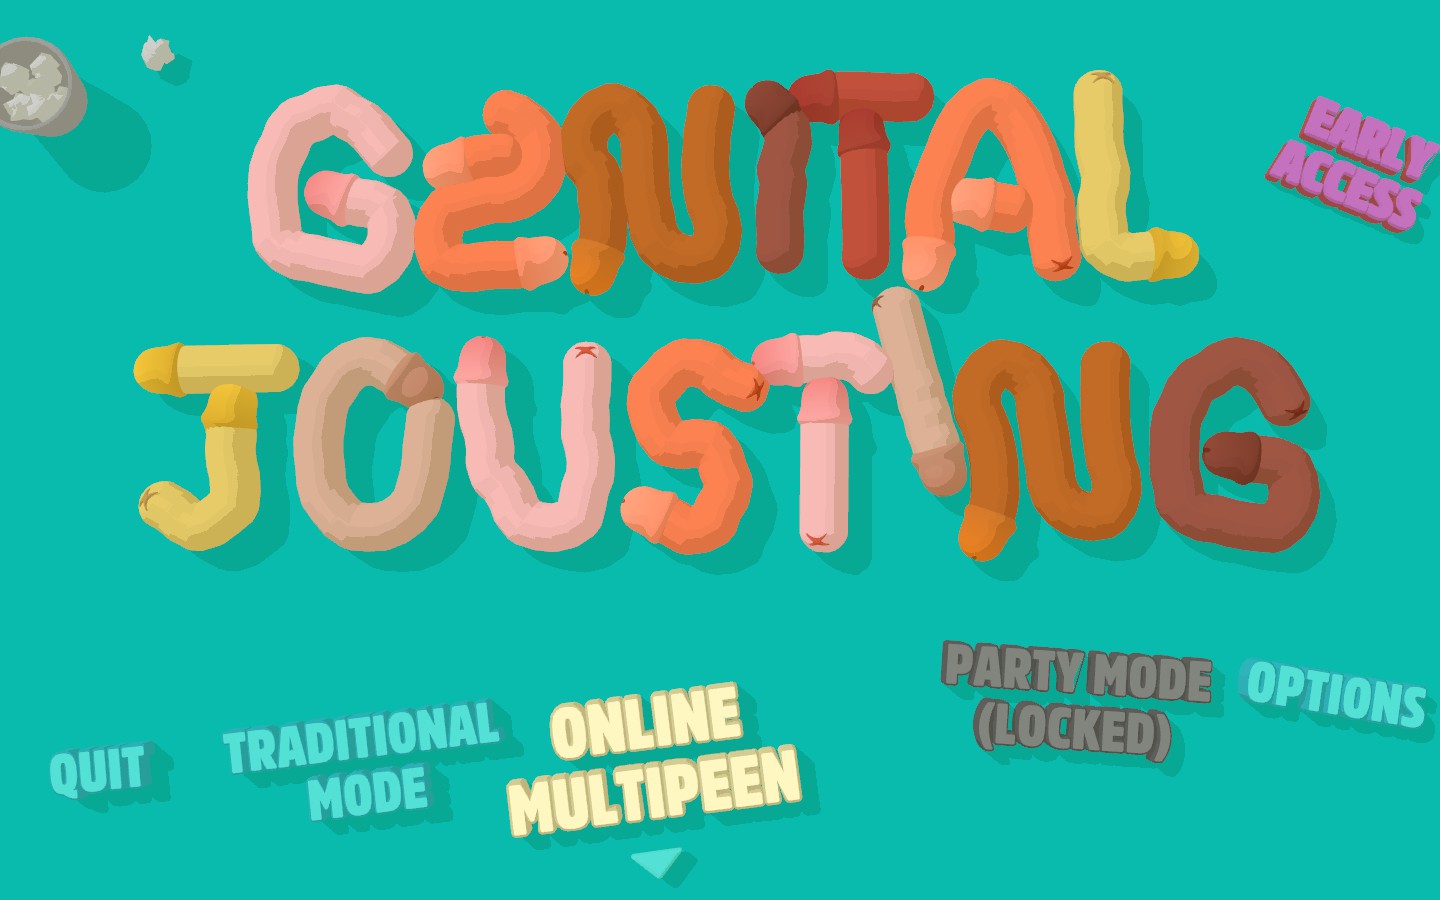 genital jousting app